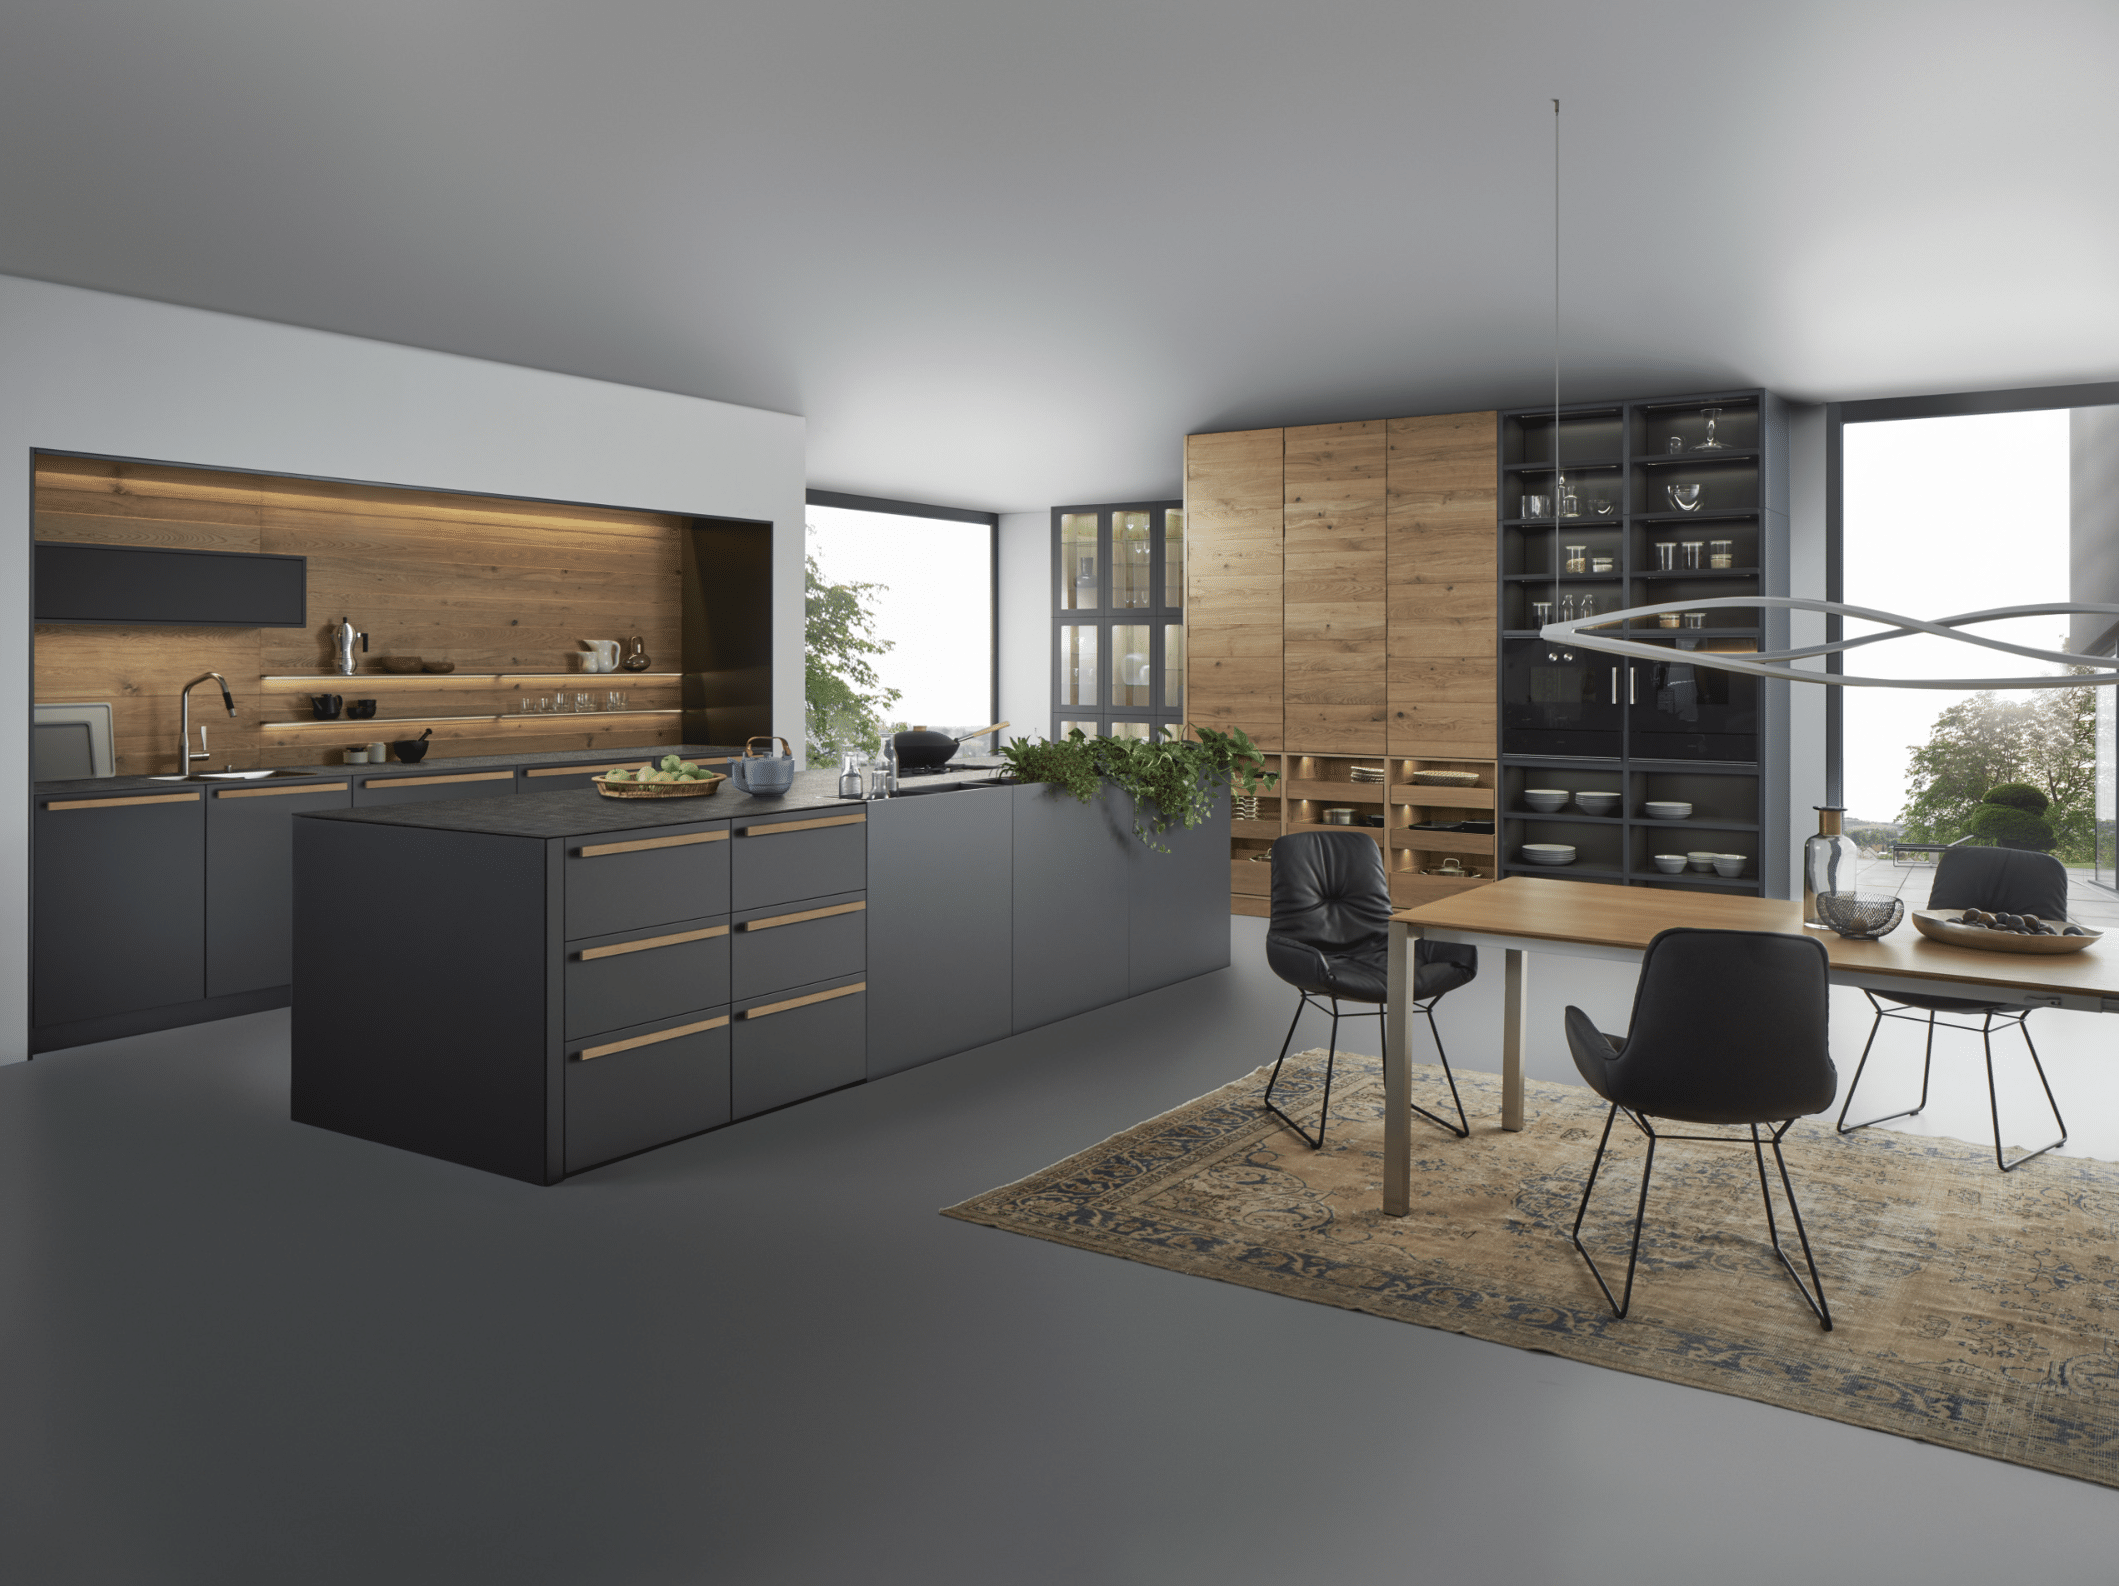 WOHNHAUS Grill & Ronacher zeigt eine moderne Inselküche von LEICHT Küchen mit dunklen, anthrazitfarbenen Holz-Fronten und hohen Schränken mit viel Stauraum.